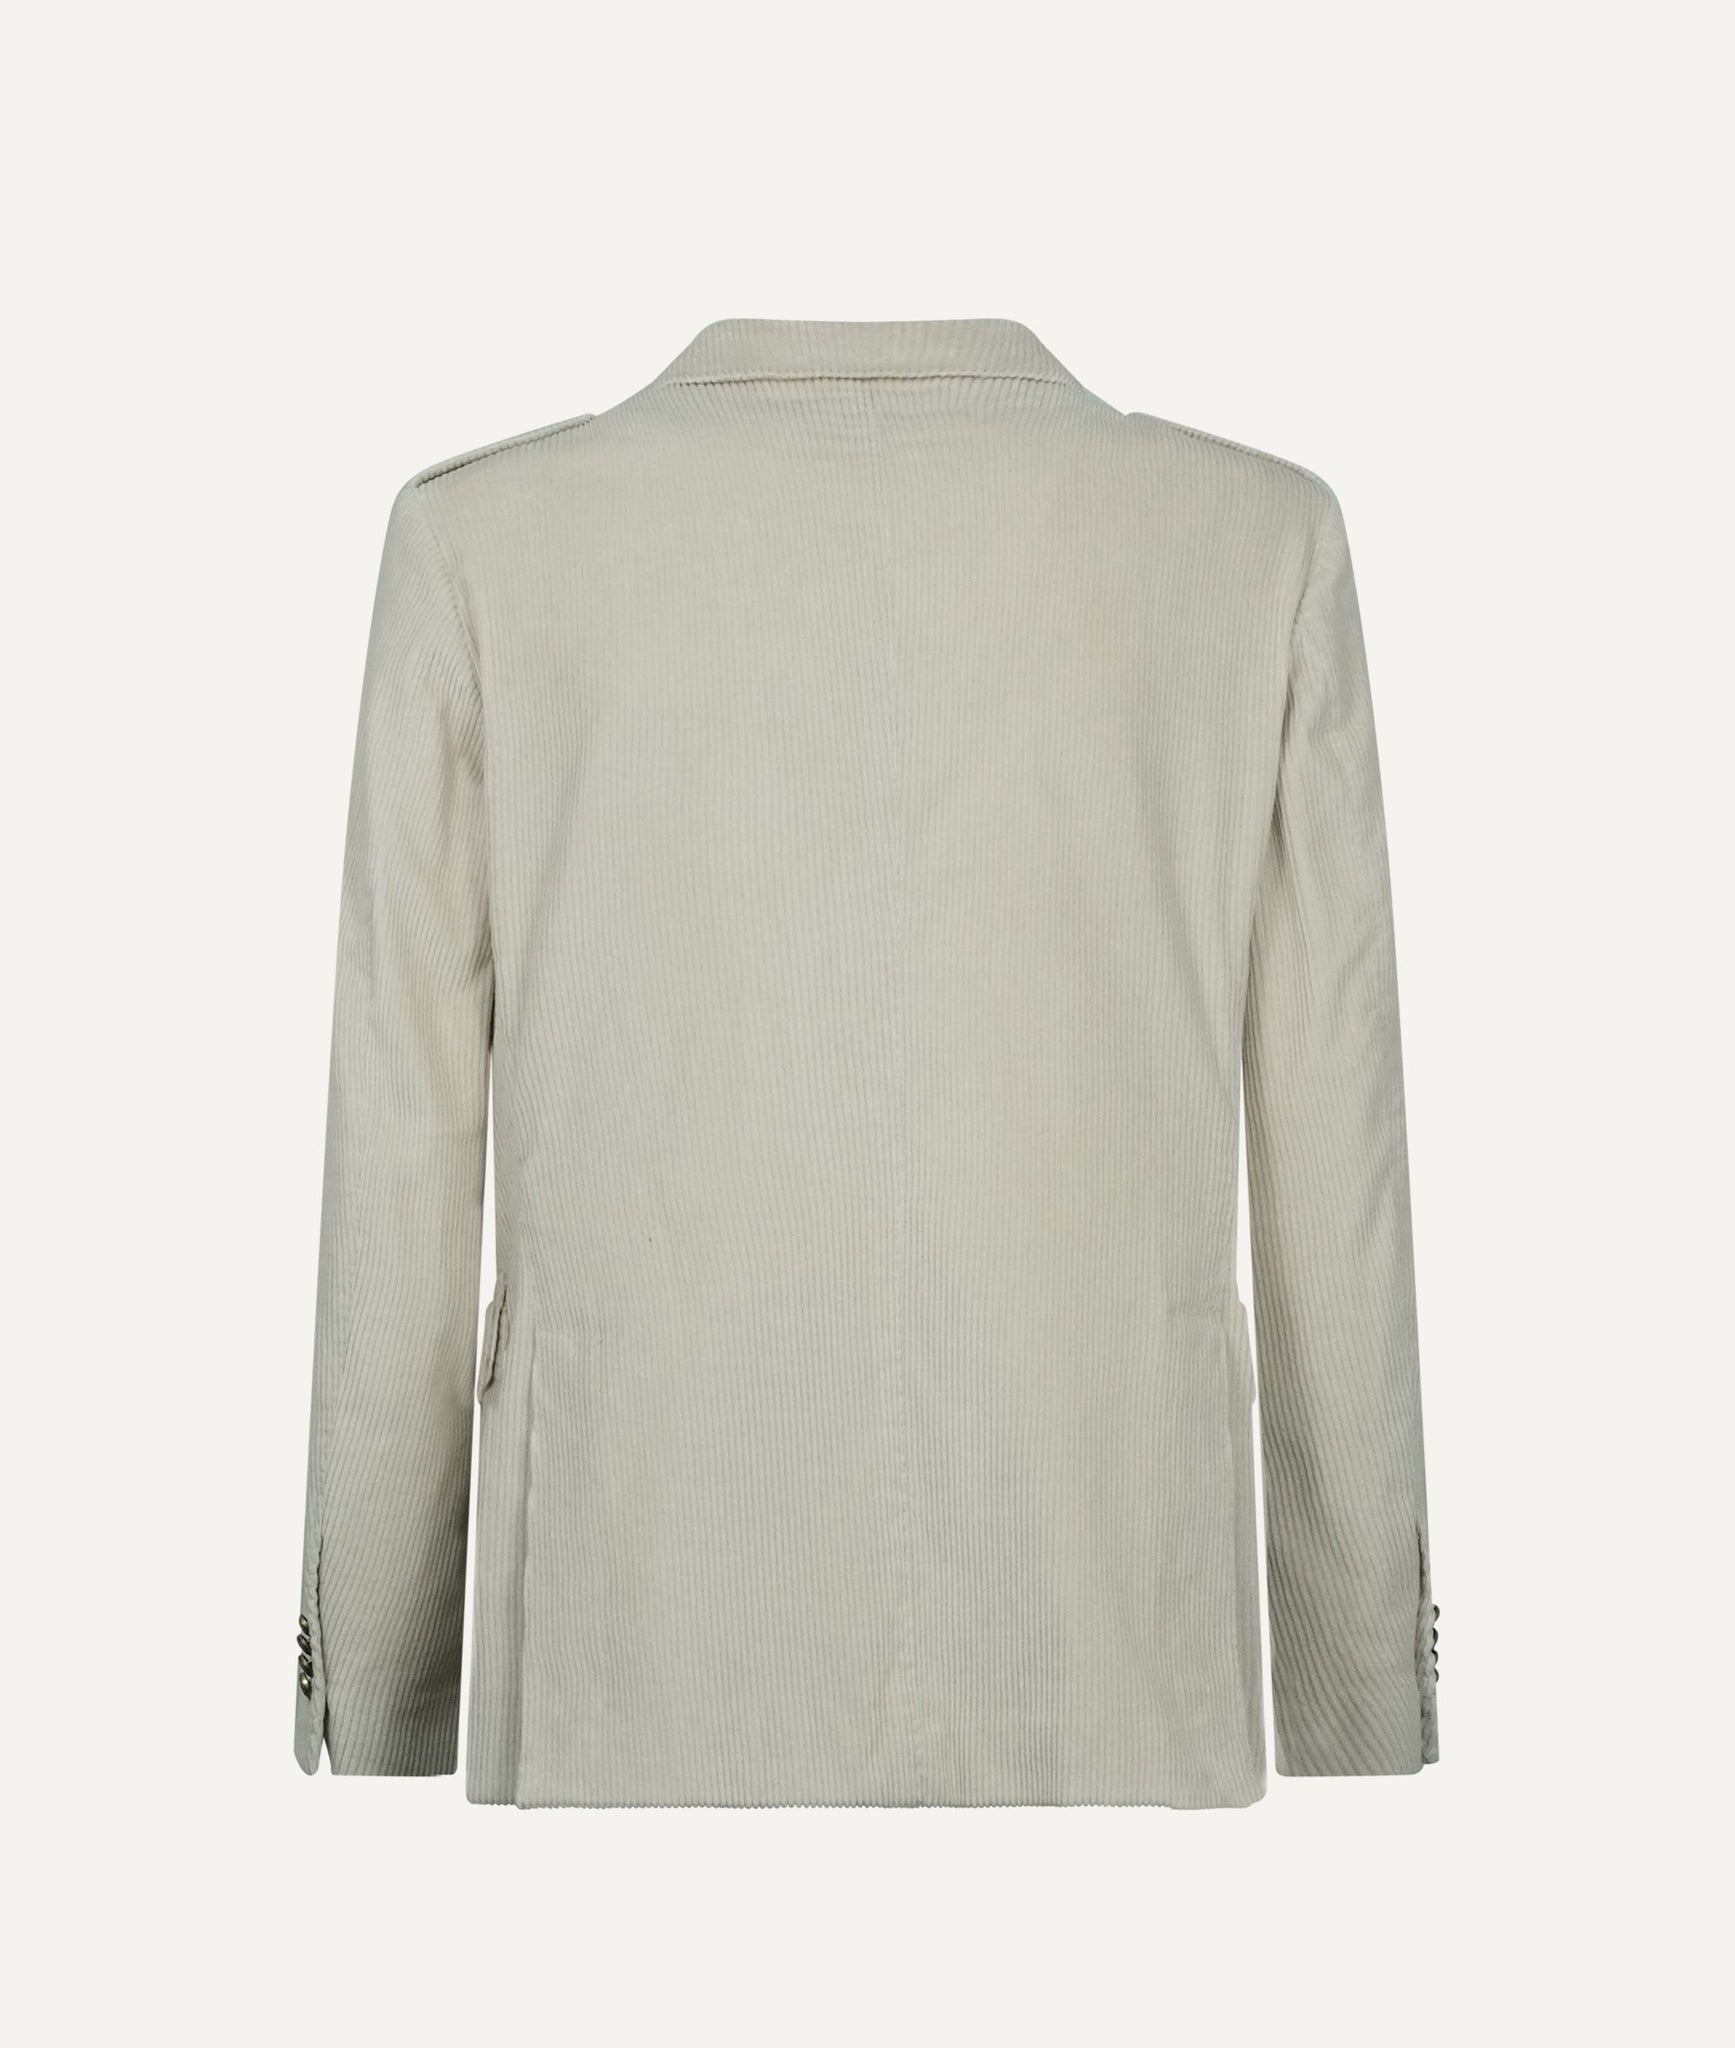 Eleventy - Safari Jacket in Cotton & Cashmere